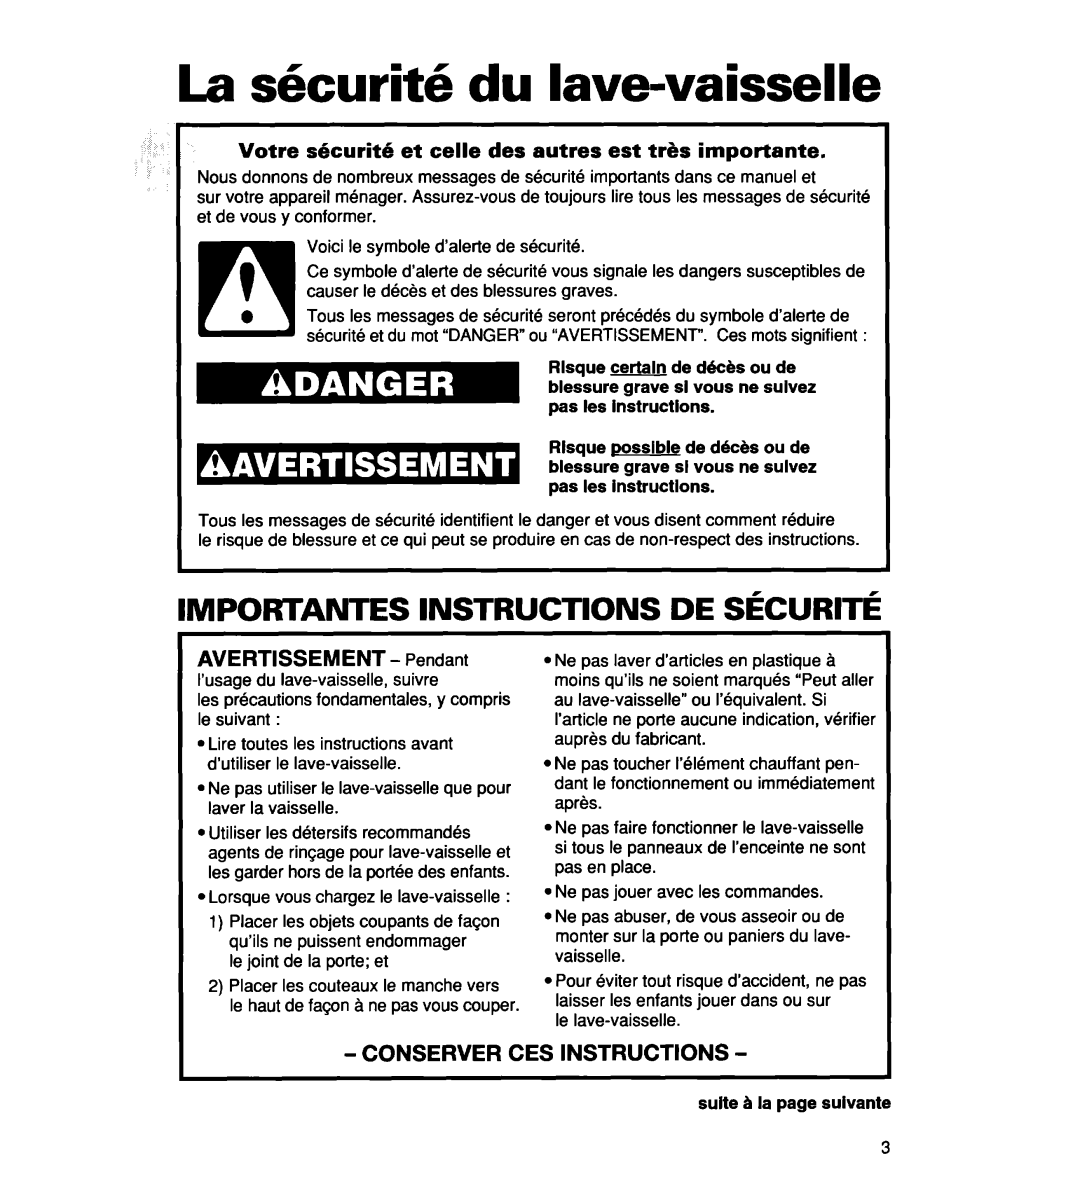 Whirlpool 935 Series warranty La skurith du lave-vaisselle, Importantes Instructions De Securite, AVERTISSEMENT - Pendant 